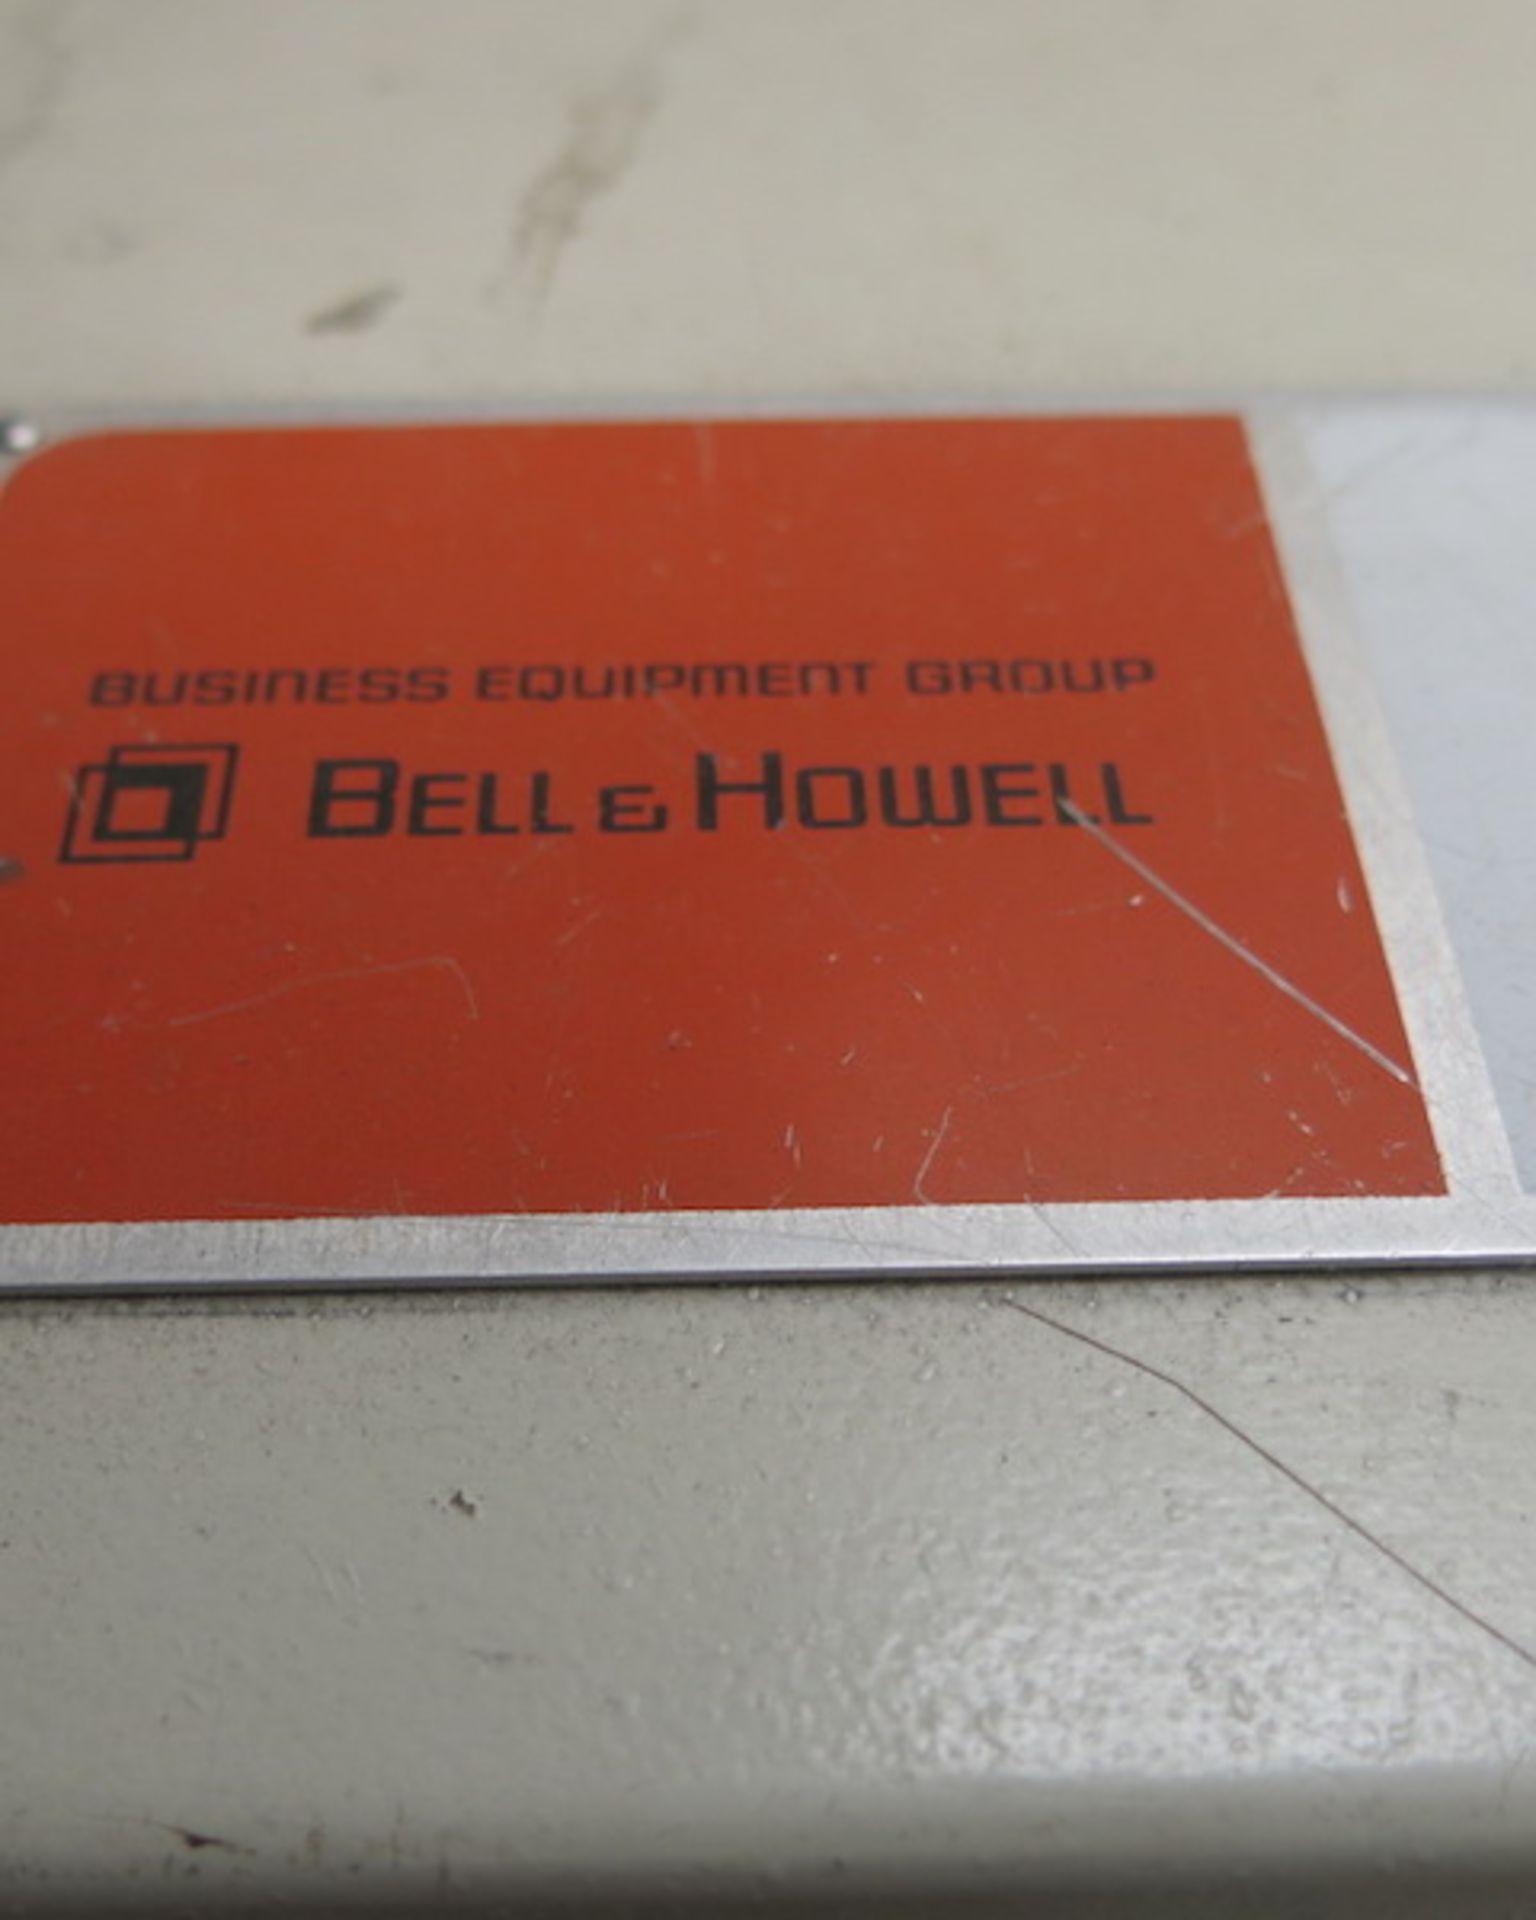 Bell & Howell Phillipsburg Expiditer 5000 Envelope Inserter, S/N 31-P603 - Image 8 of 11